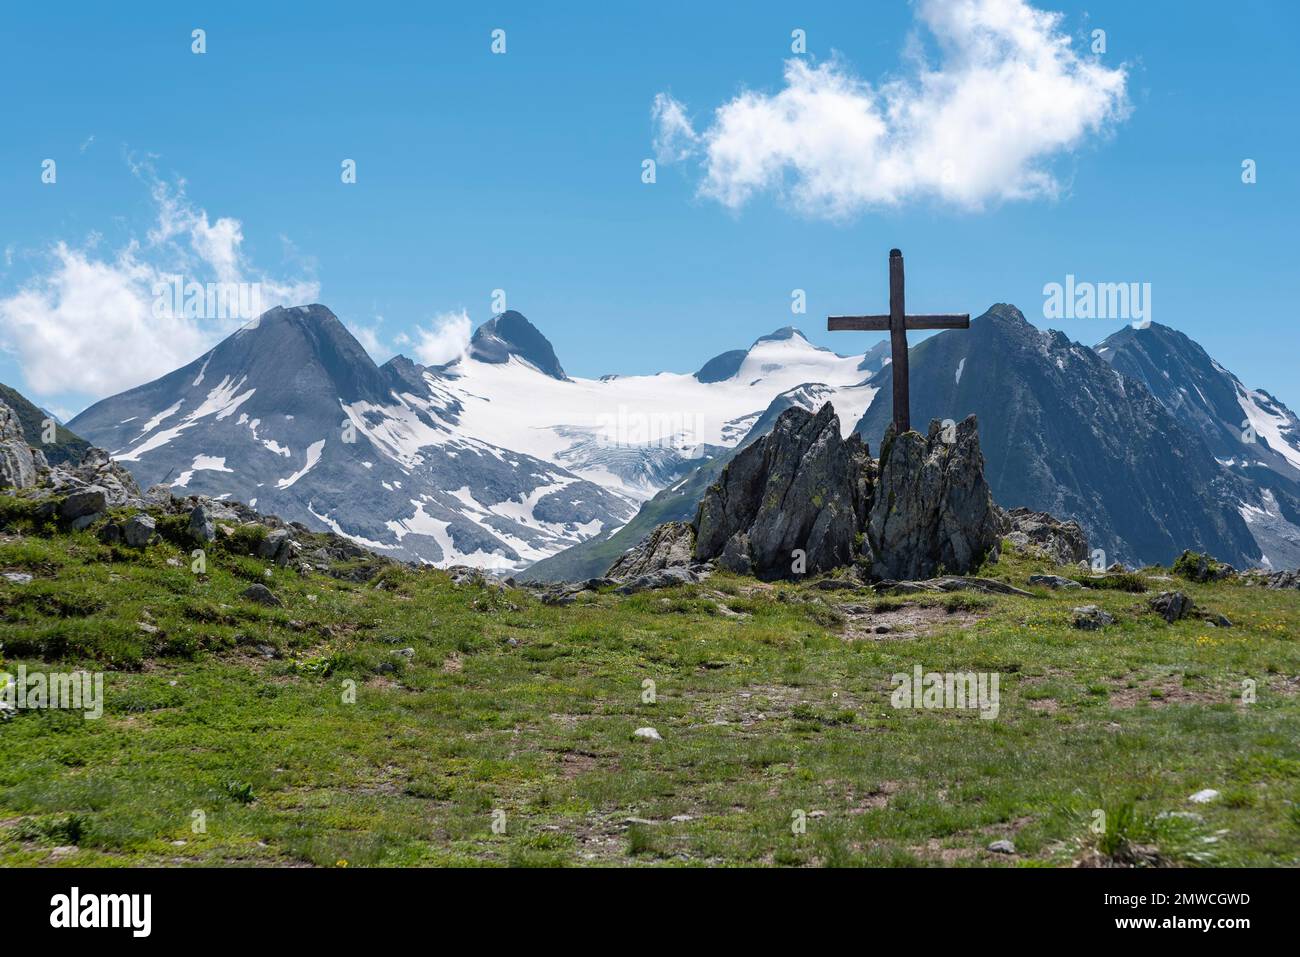 Nufenen Cross in Alpine Landscape near Nufenen Pass, Ulrichen, Valais, Switzerland Stock Photo